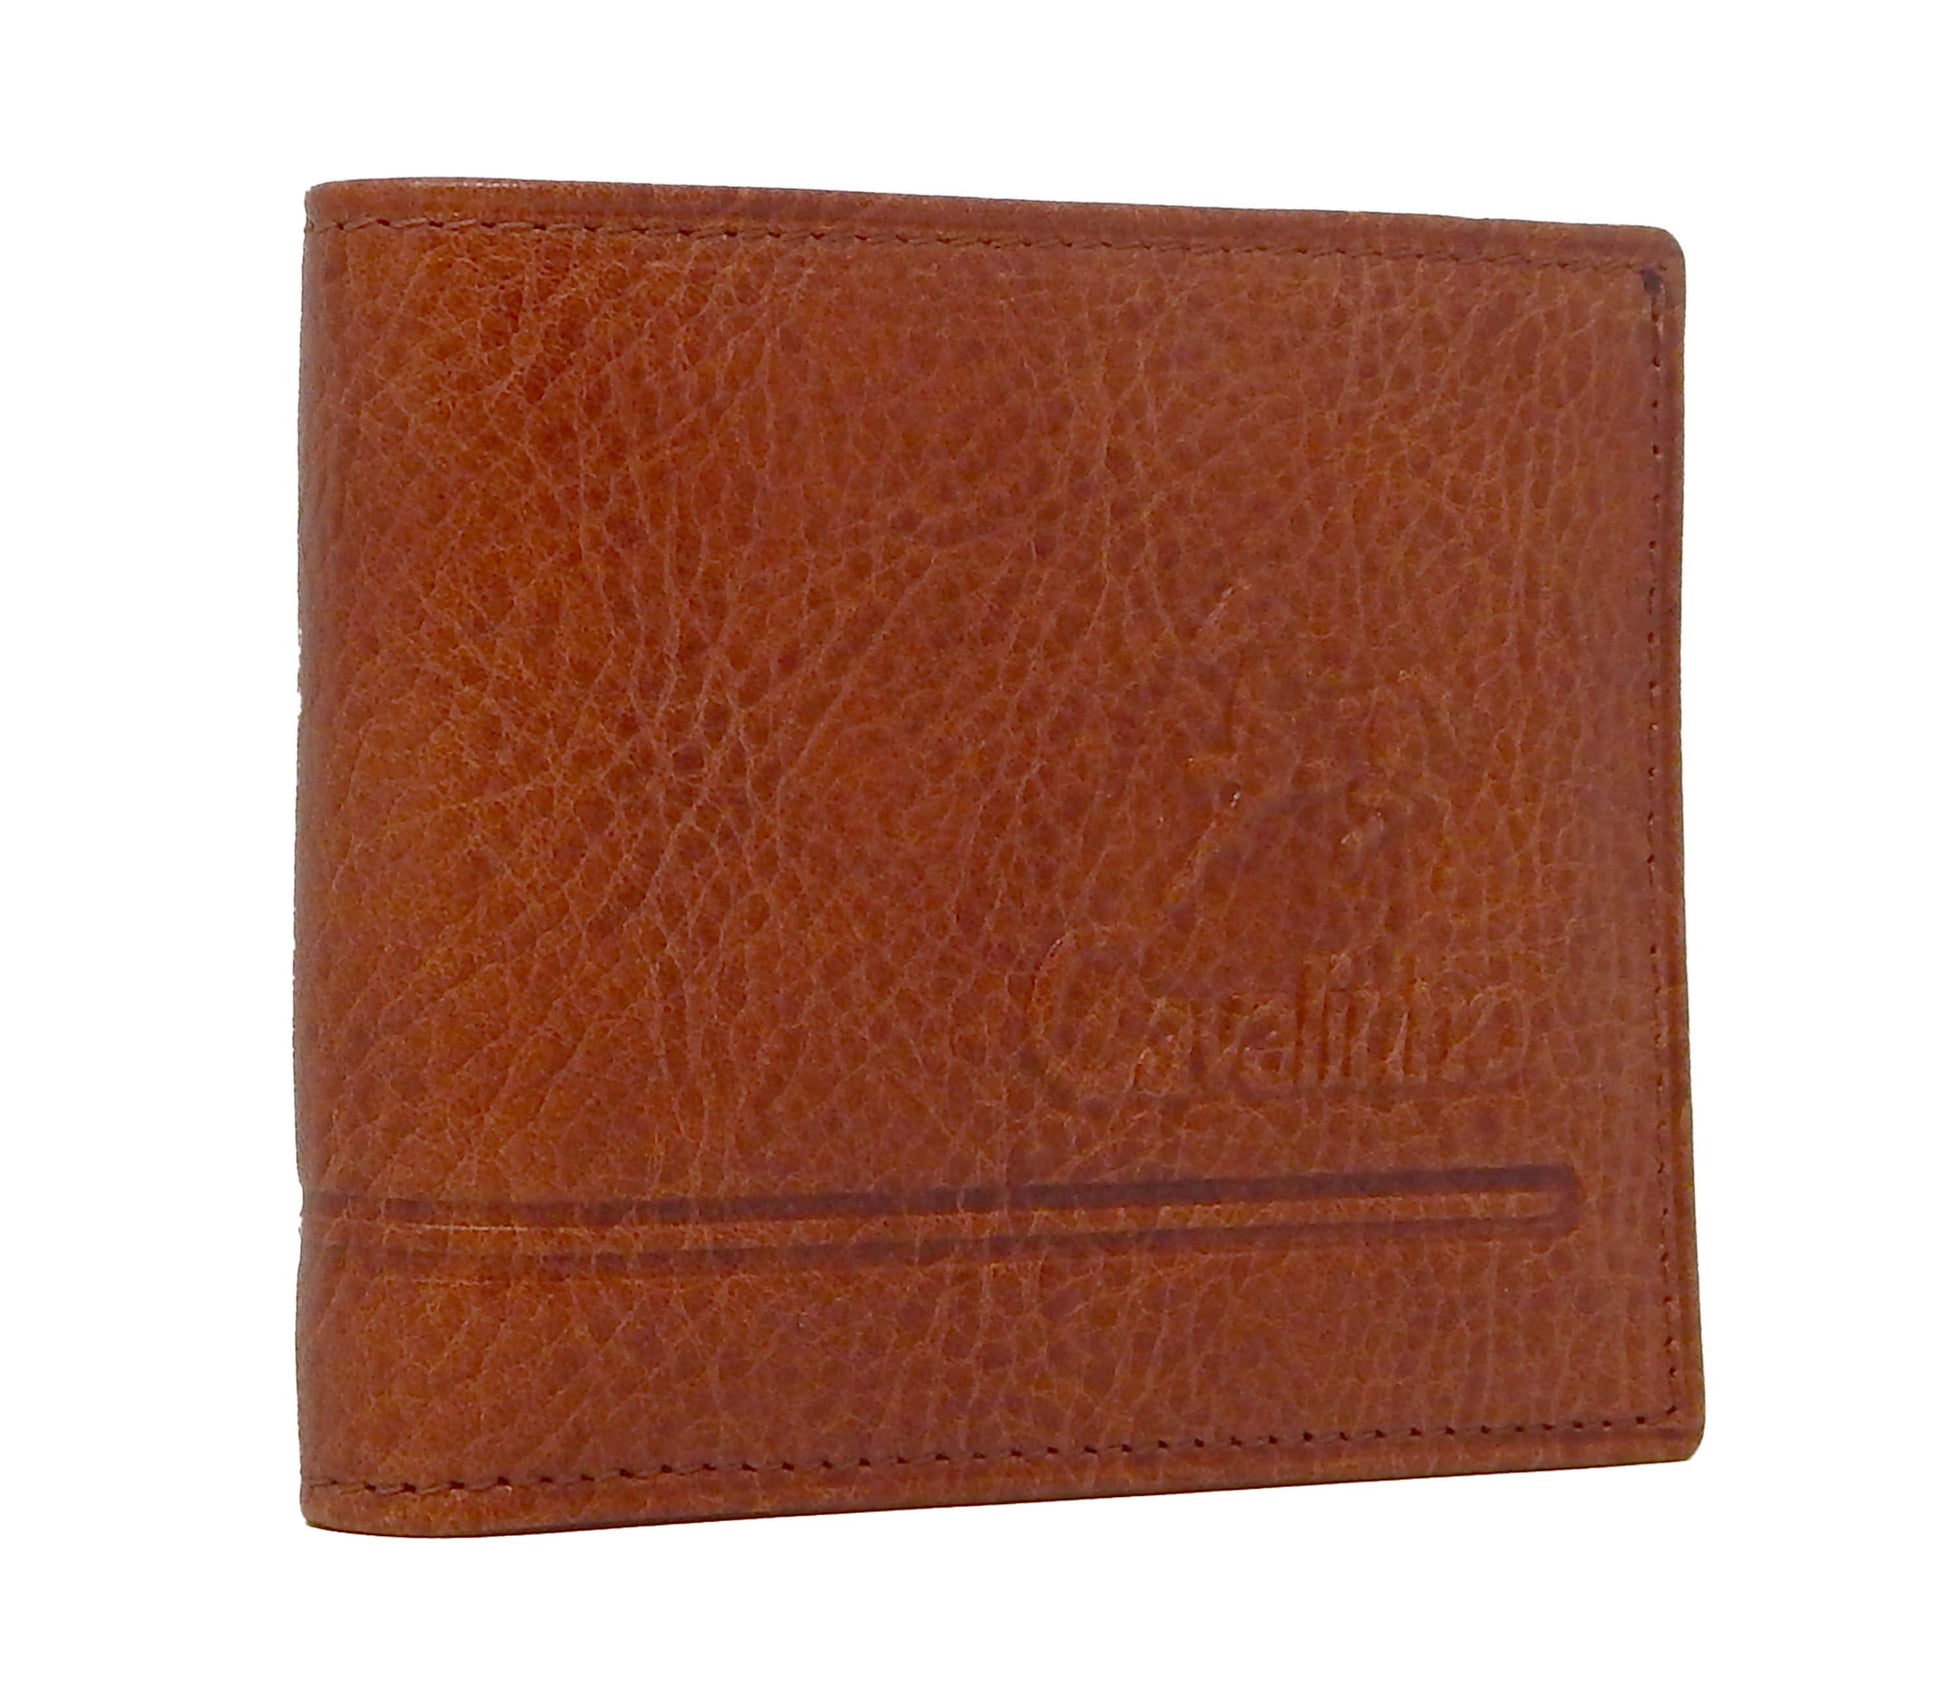 #color_ SaddleBrown | Cavalinho Men's Leather Trifold Leather Wallet - SaddleBrown - 28160529.13.99_2